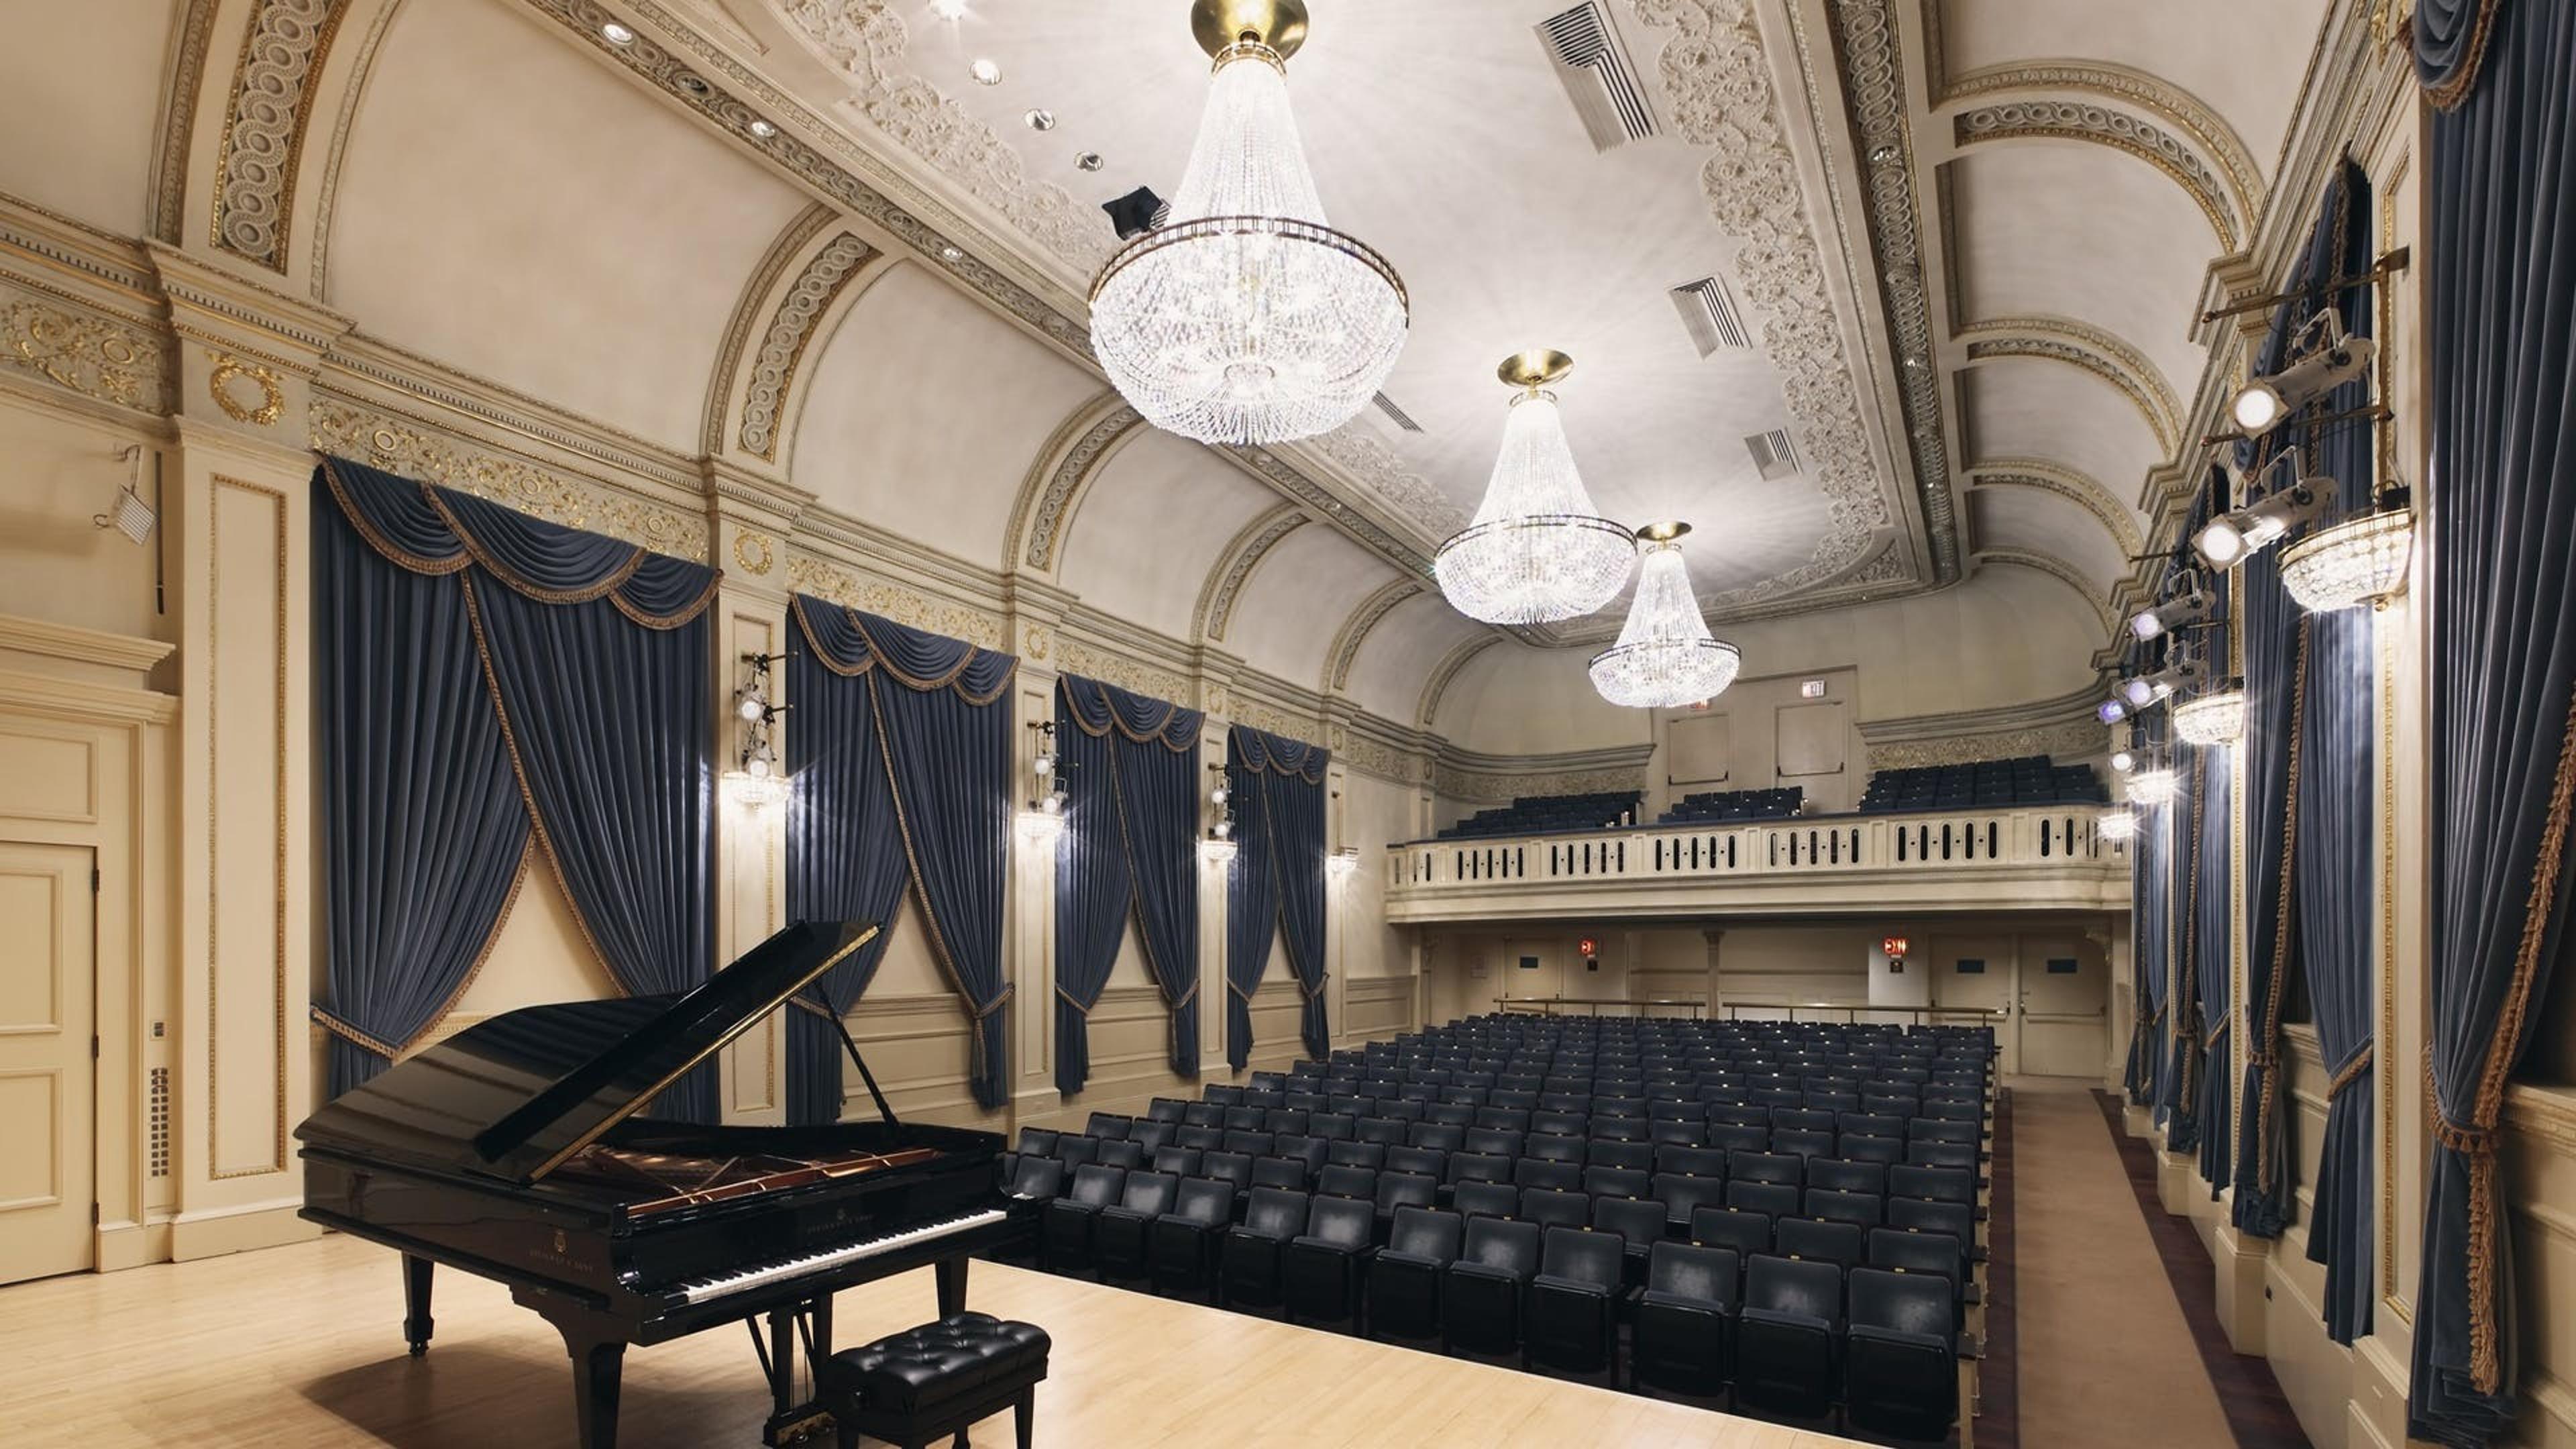 Weill Recital Hall at Carnegie Hall